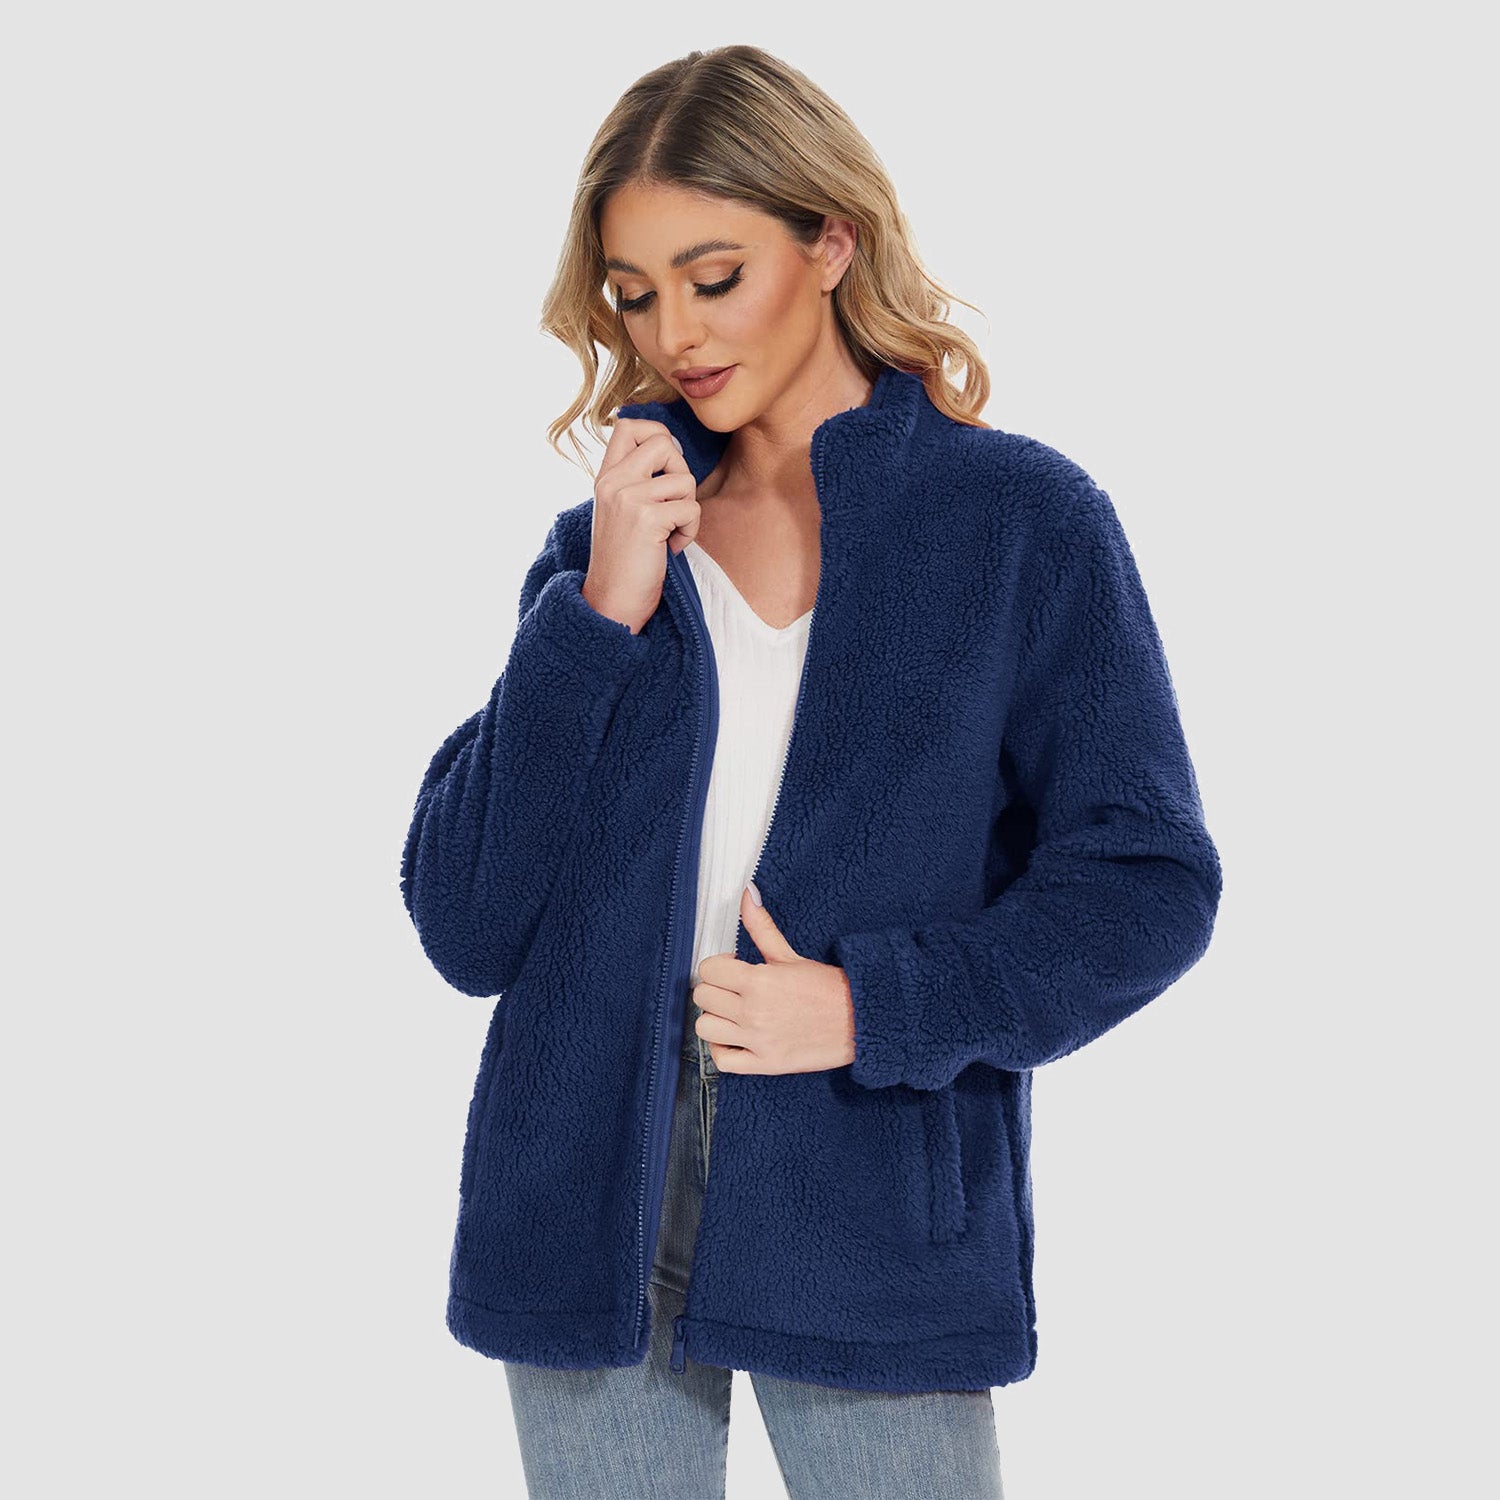 Women's Sherpa Jacket Full-Zip Fuzzy Fleece Teddy Casual Coats Zip Pockets Winter Warm Soft Jackets